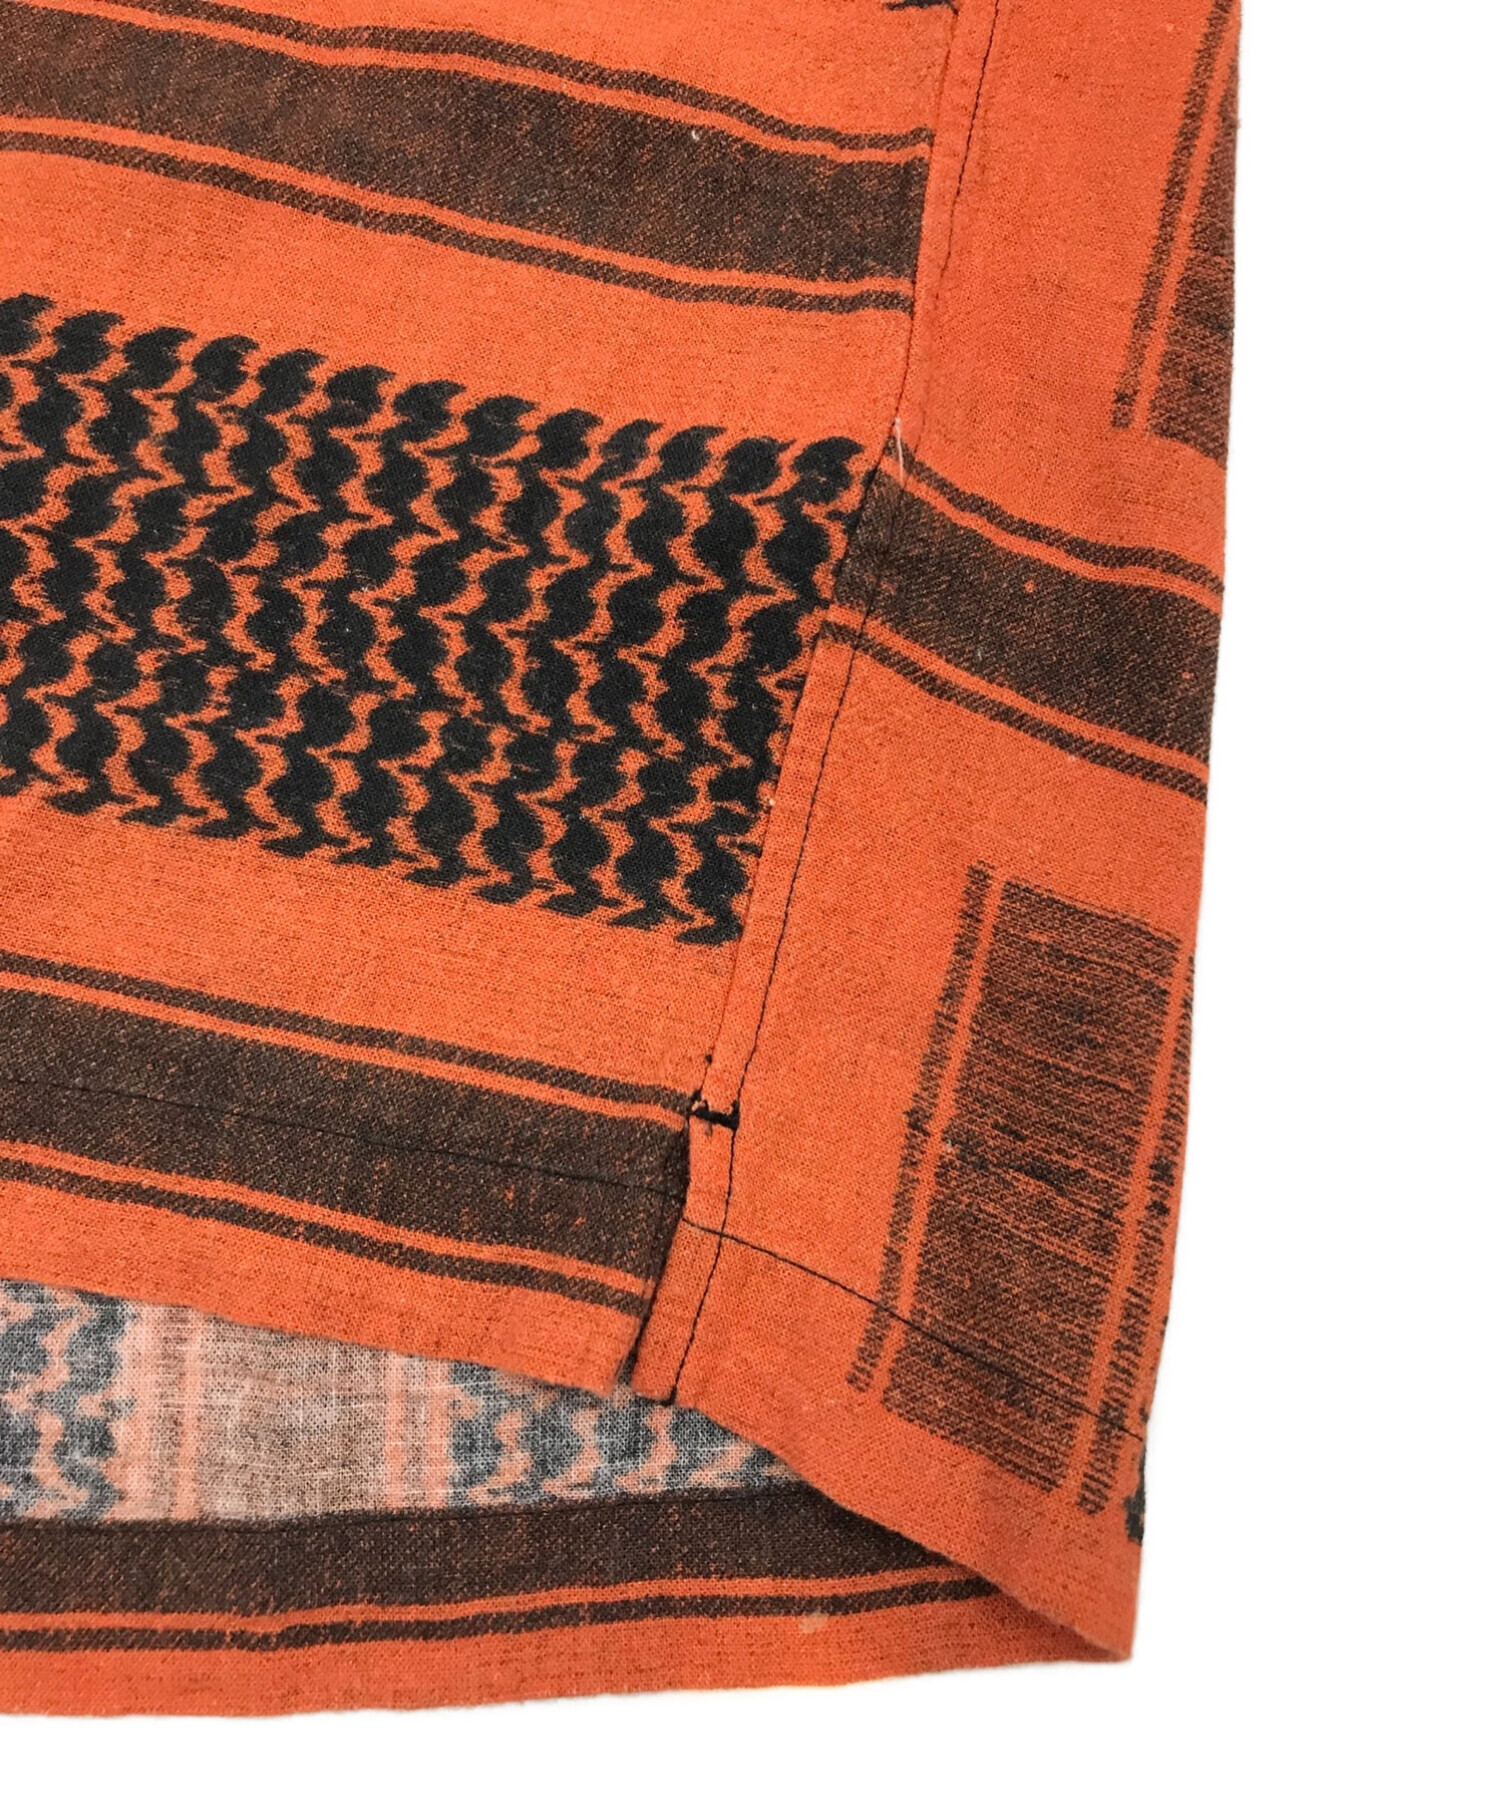 UNUSED (アンユーズド) Afghan print shirt / アフガンプリントシャツ / オープンカラーシャツ / 半袖シャツ  ブラック×オレンジ サイズ:3